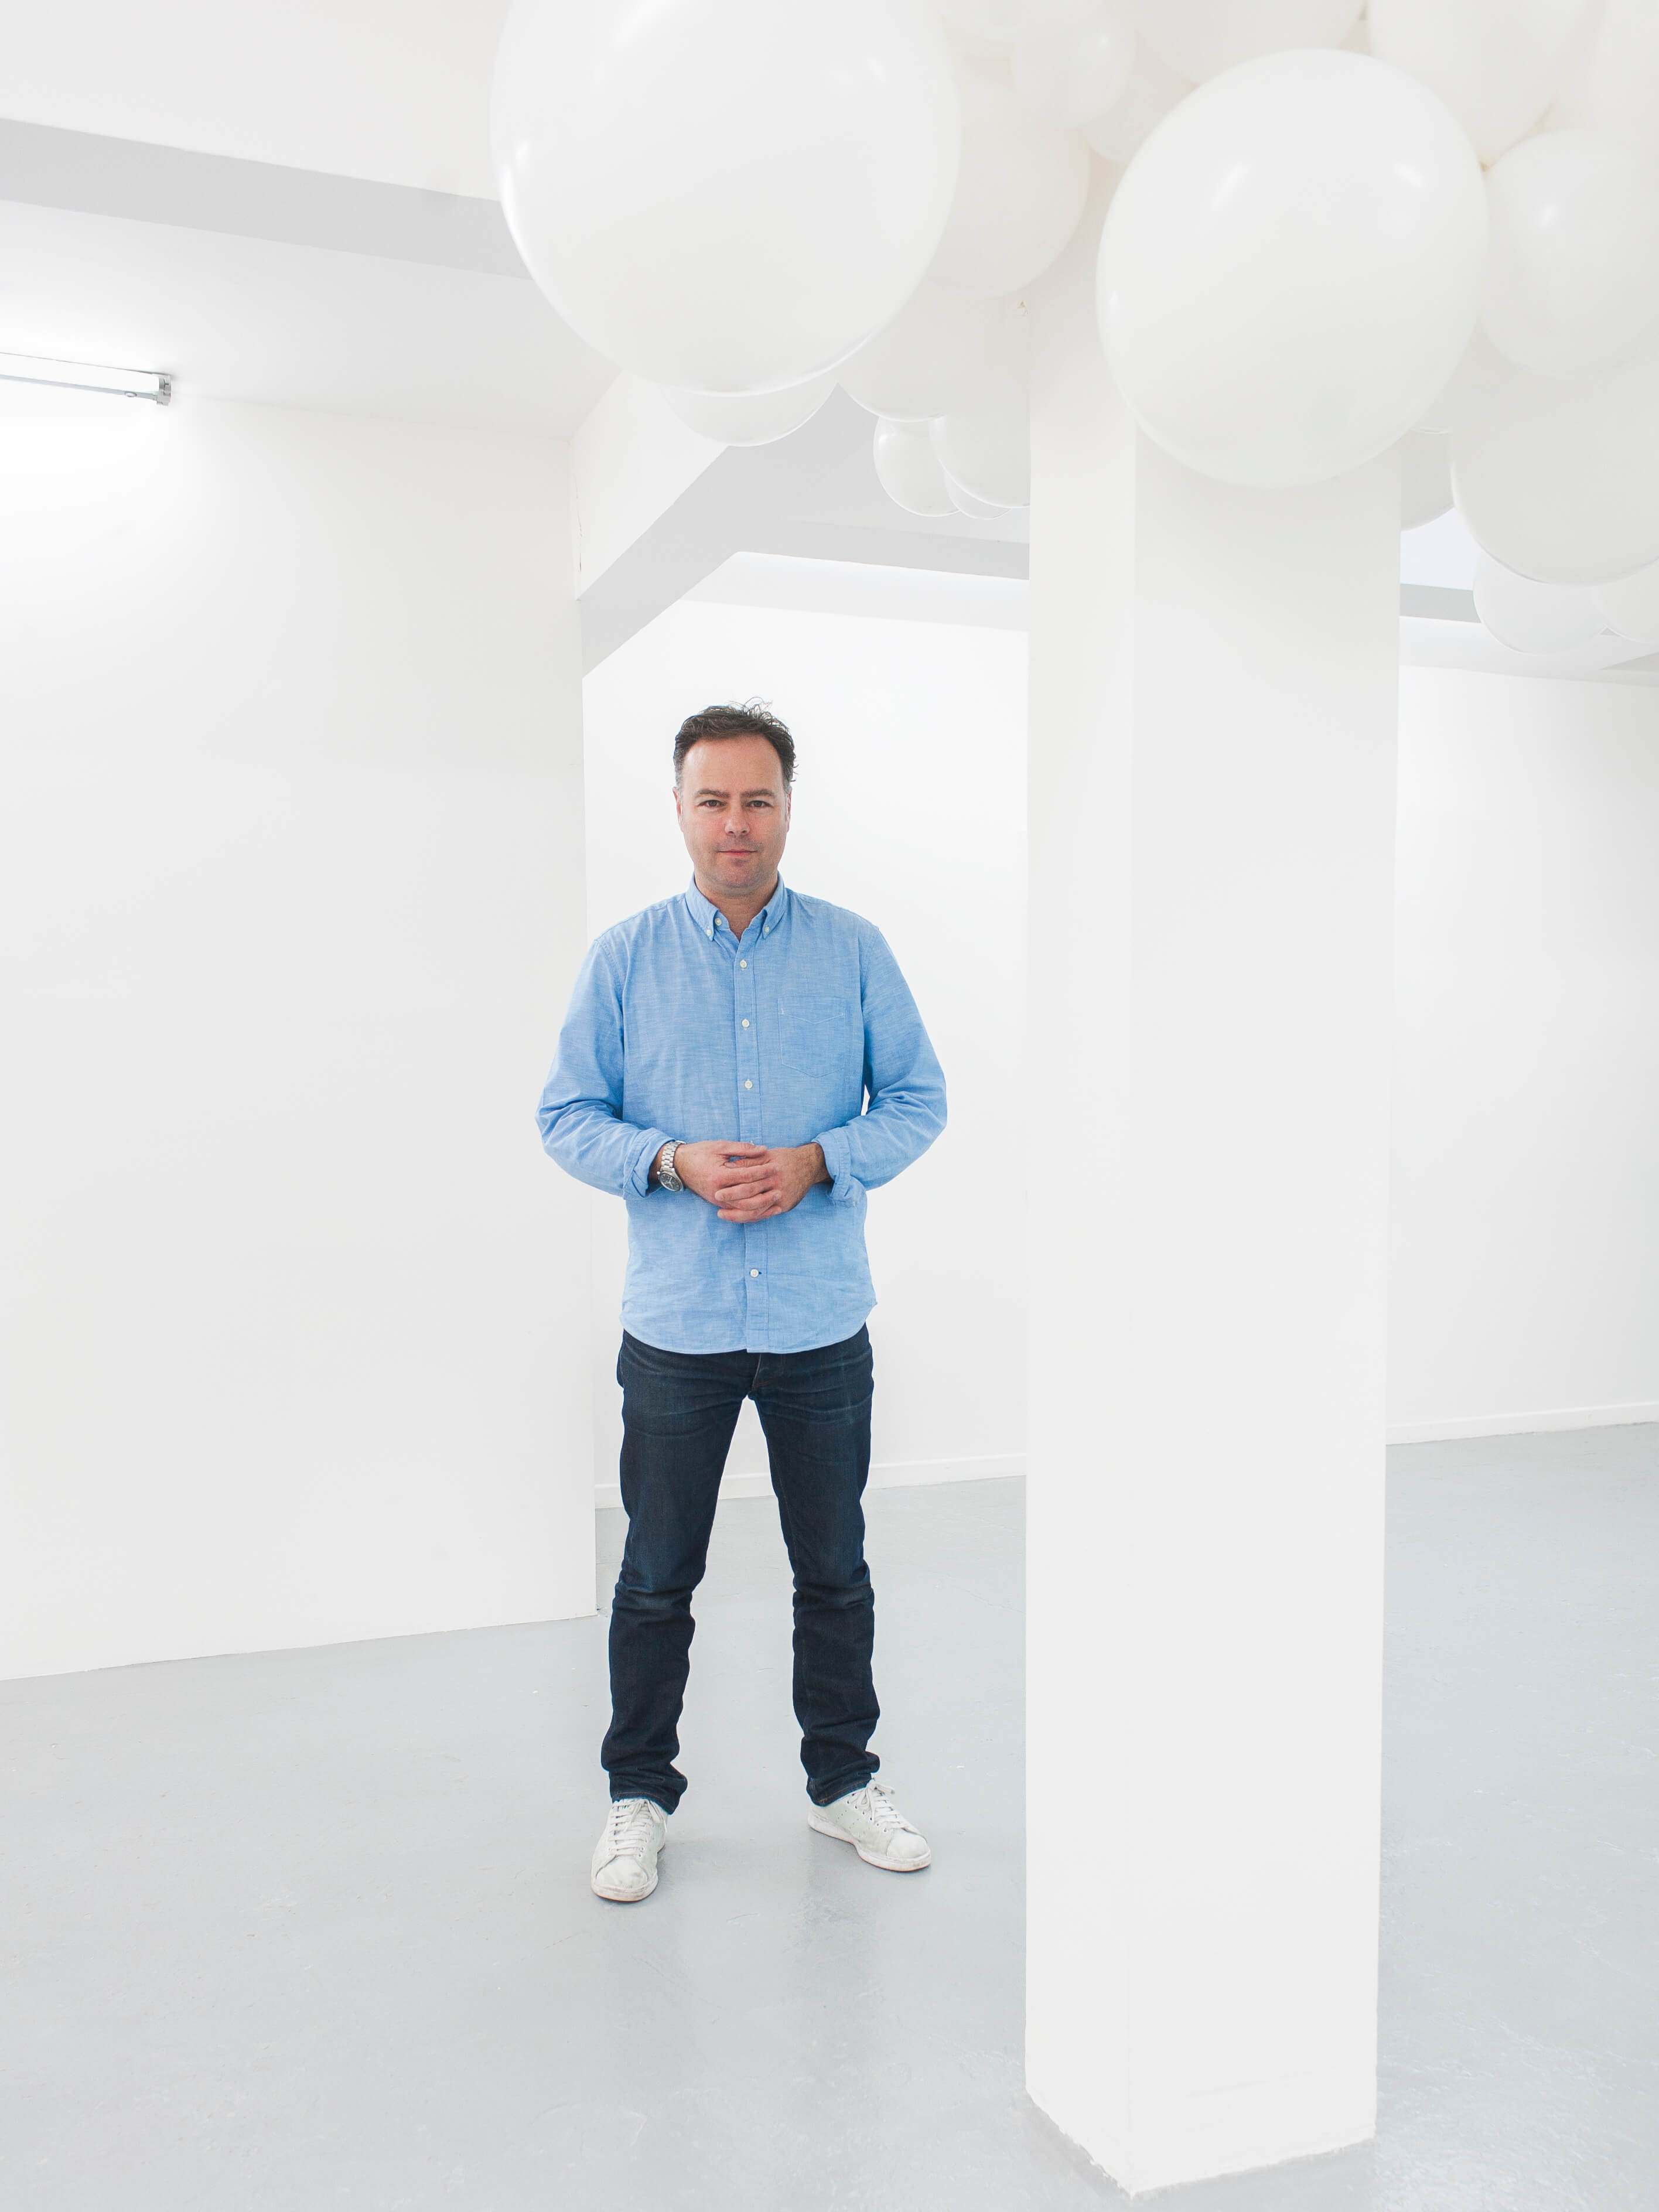 L’artista Charles Petillon è famoso per le sue opere che hanno le sfere come protagoniste. La sua installazione con tessuti Sunbrella è apparsa a Milano durante SuperDesign 2017.